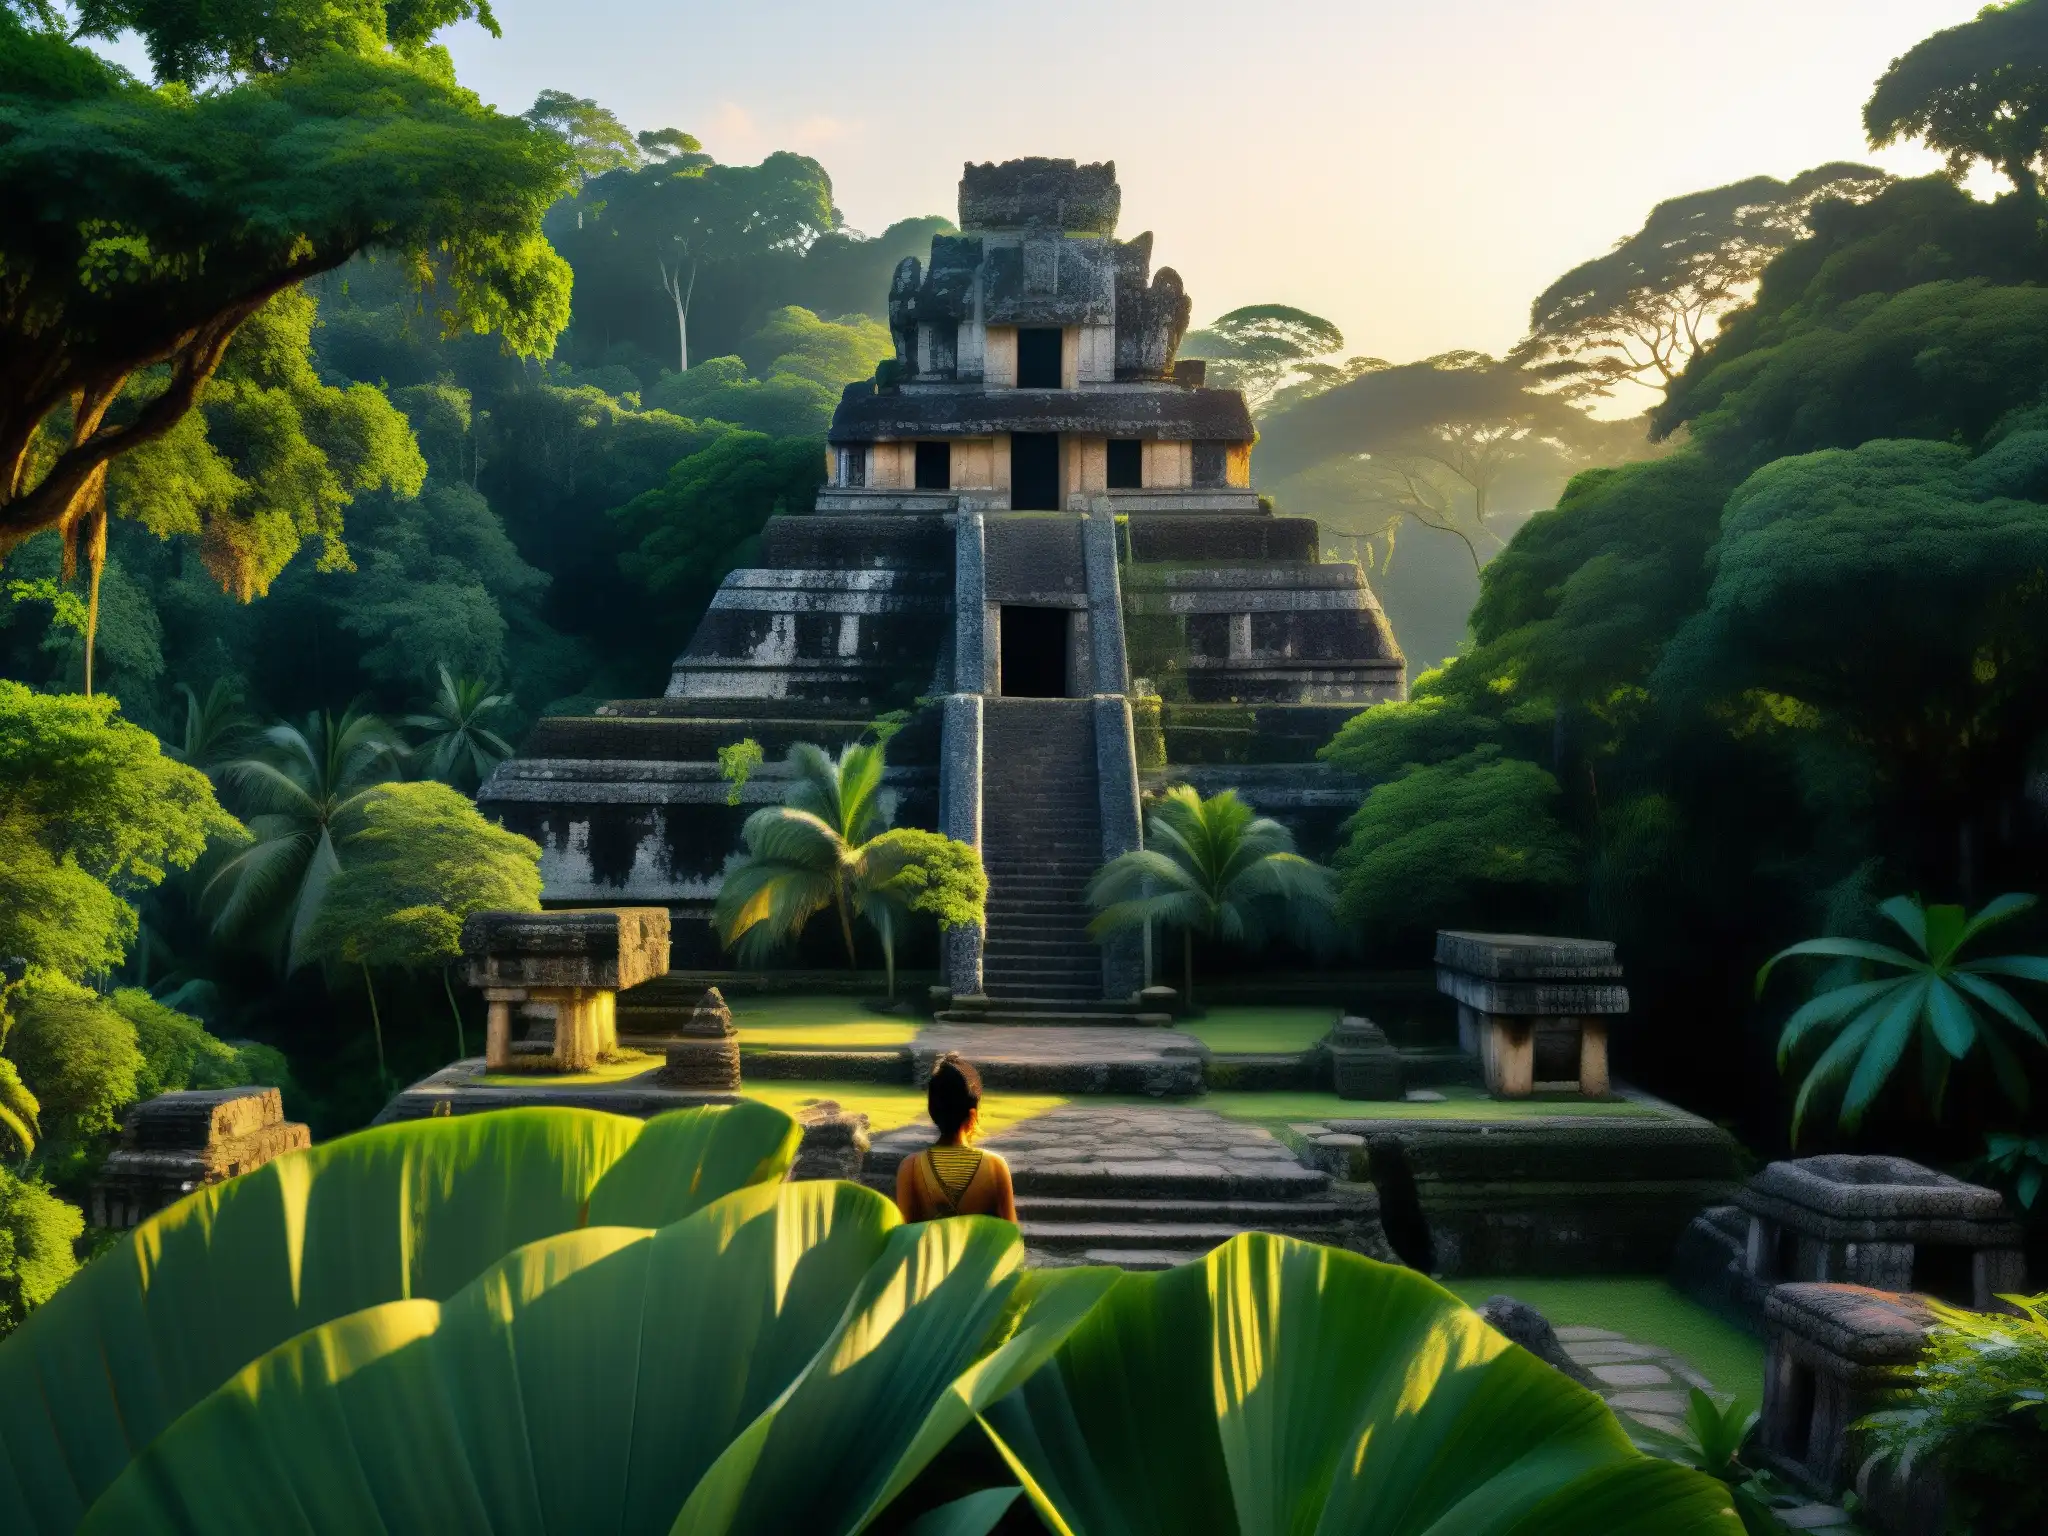 Una escena detallada de la exuberante selva al atardecer, con ruinas mayas entre la densa vegetación